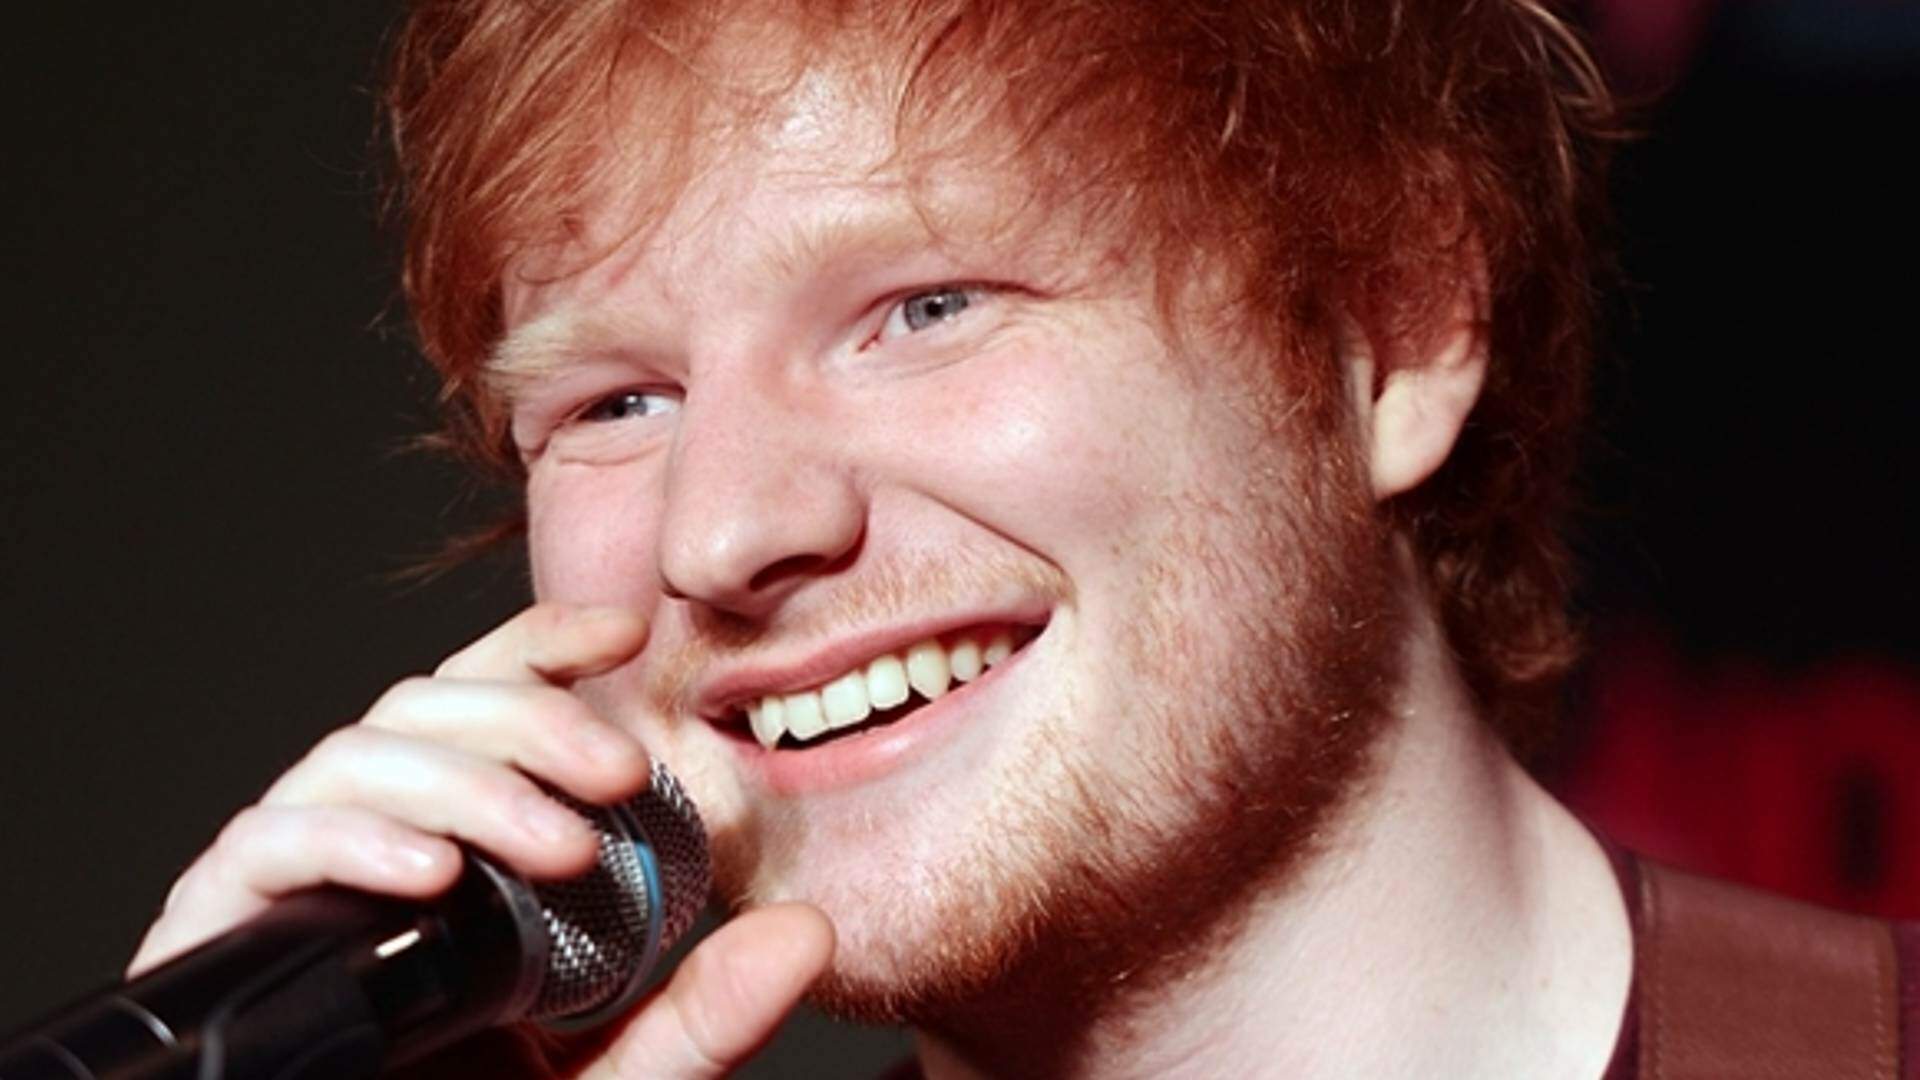 Abandonou a carreira artística? Ed Sheeran pega fãs de surpresa ao surgir ‘trabalhando’ em local inusitado e viraliza - Metropolitana FM